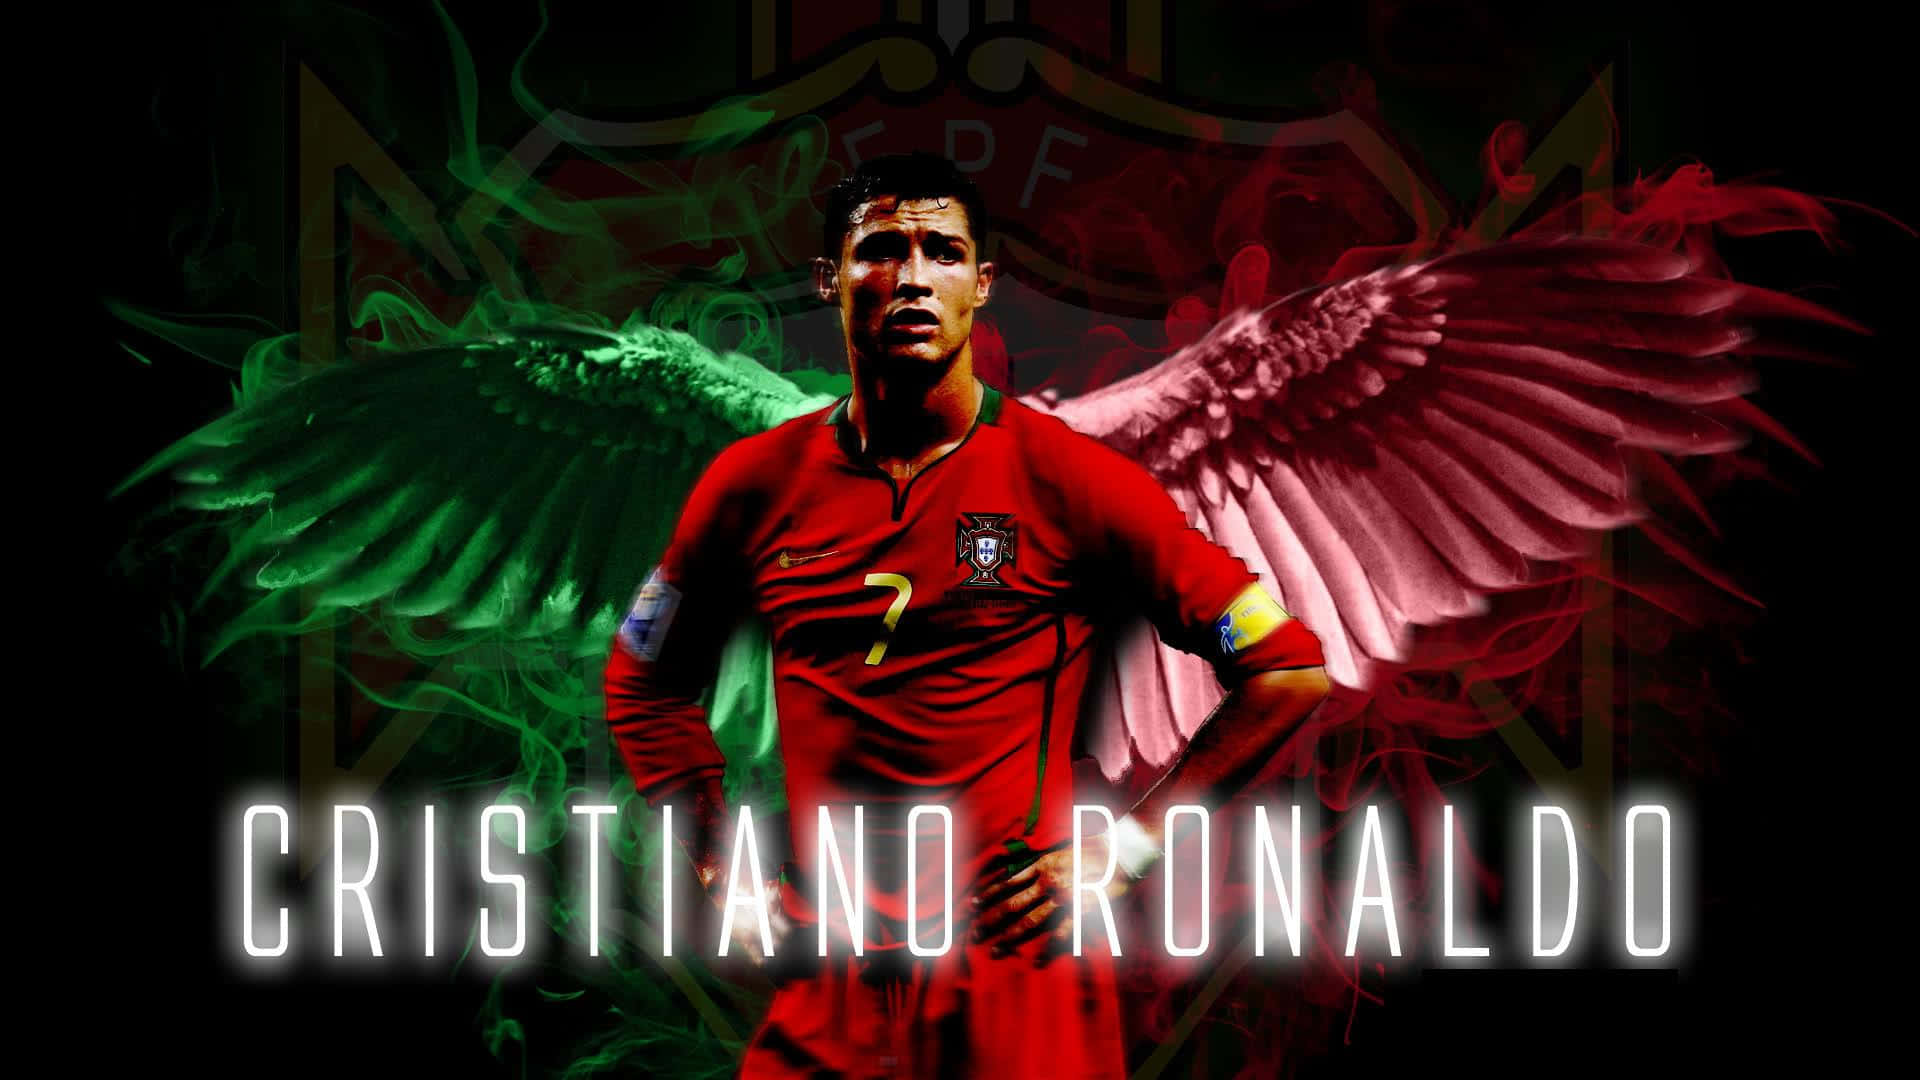 Cristiano Ronaldo Fodbold 1920 X 1080 Wallpaper